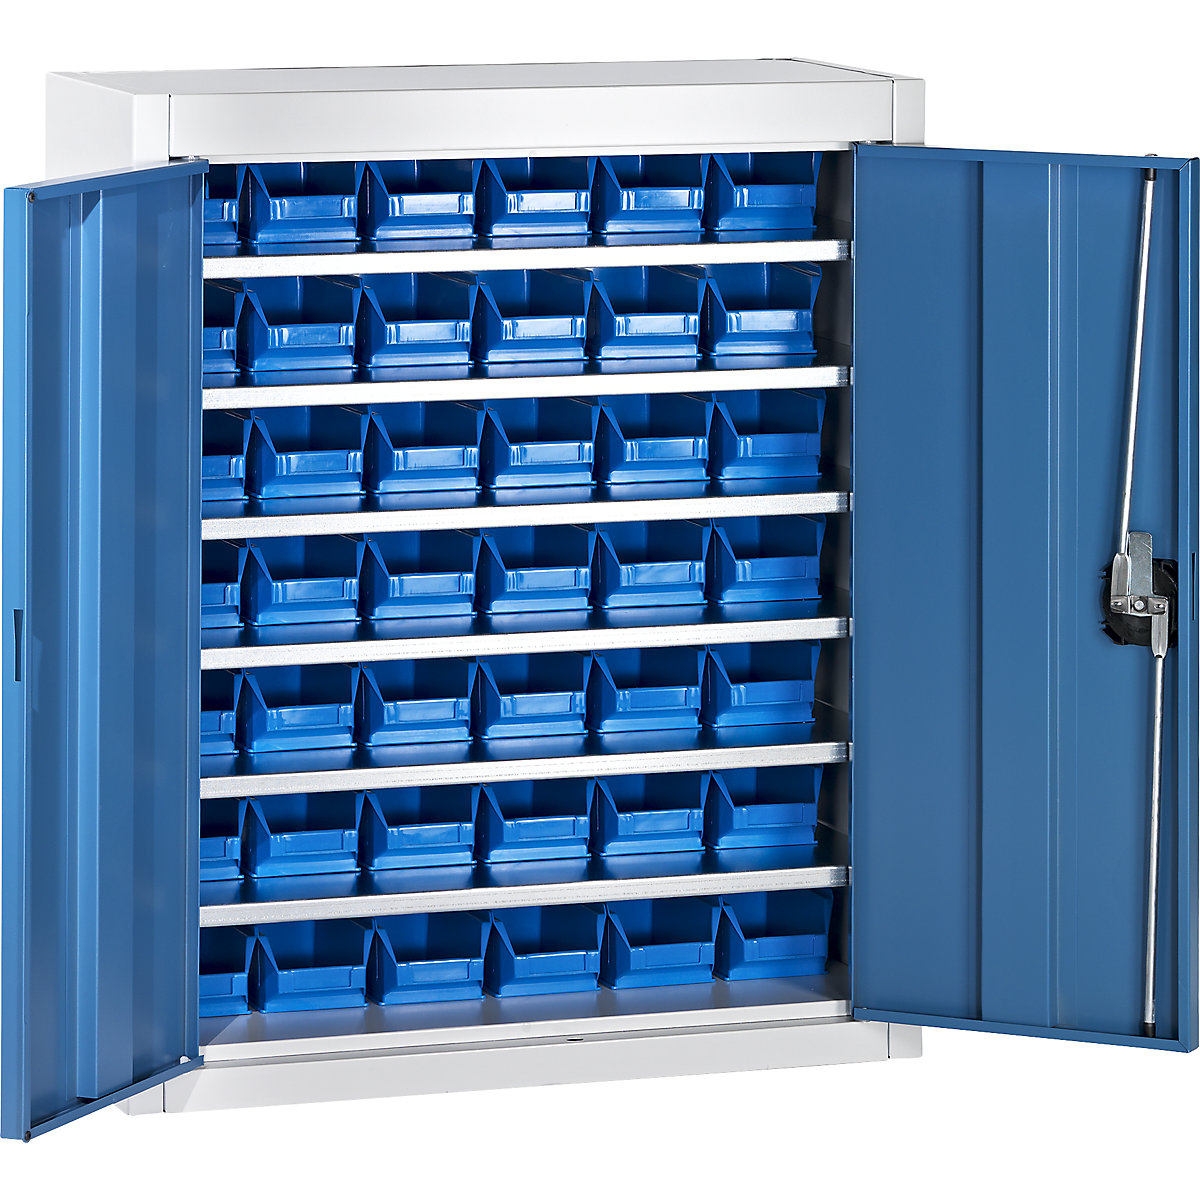 Skladiščna omara z odprtimi skladiščnimi posodami – mauser, VxŠxG 820 x 680 x 280 mm, dve barvi, korpus siv, vrata modra, 42 posod, od 3 kosov-3